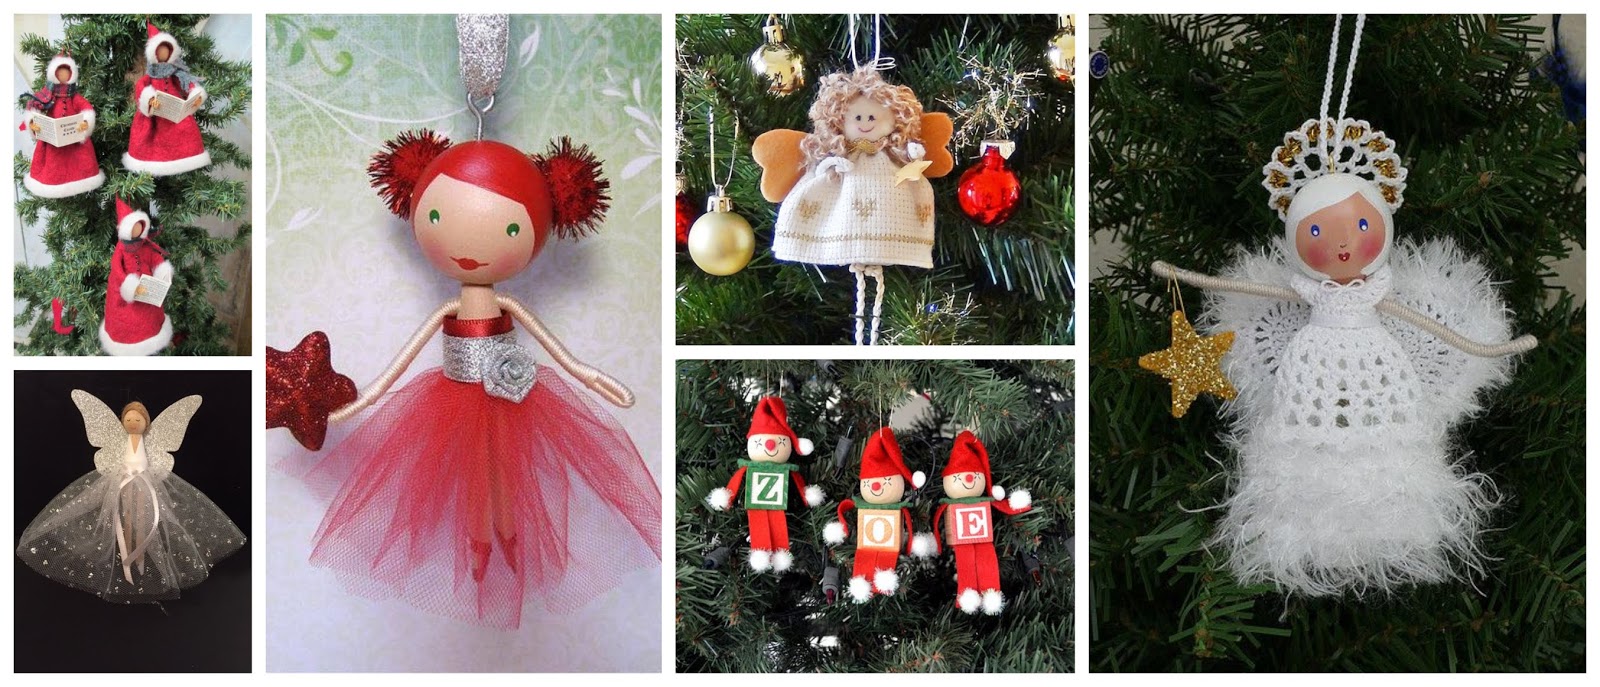 Haz lindos para colgar en el árbol de navidad Solountip.com